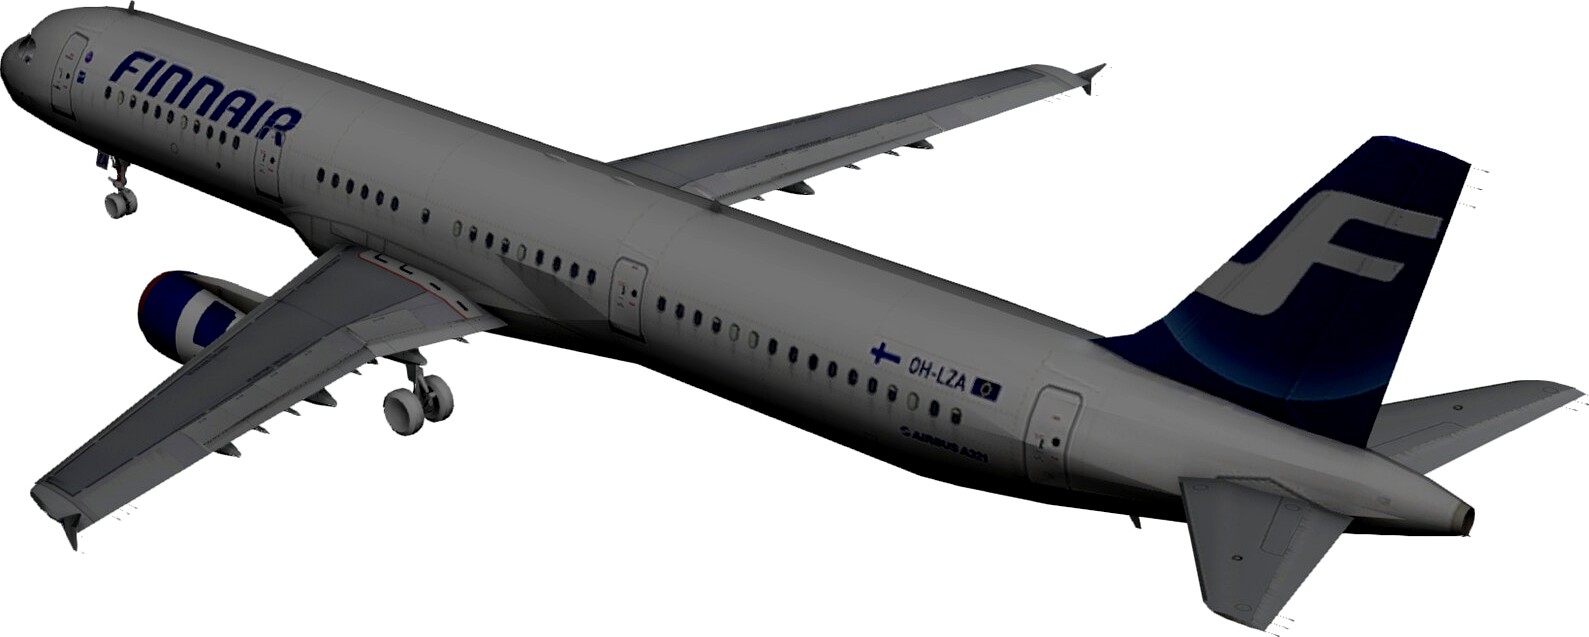 Airbus A321 FinnAir